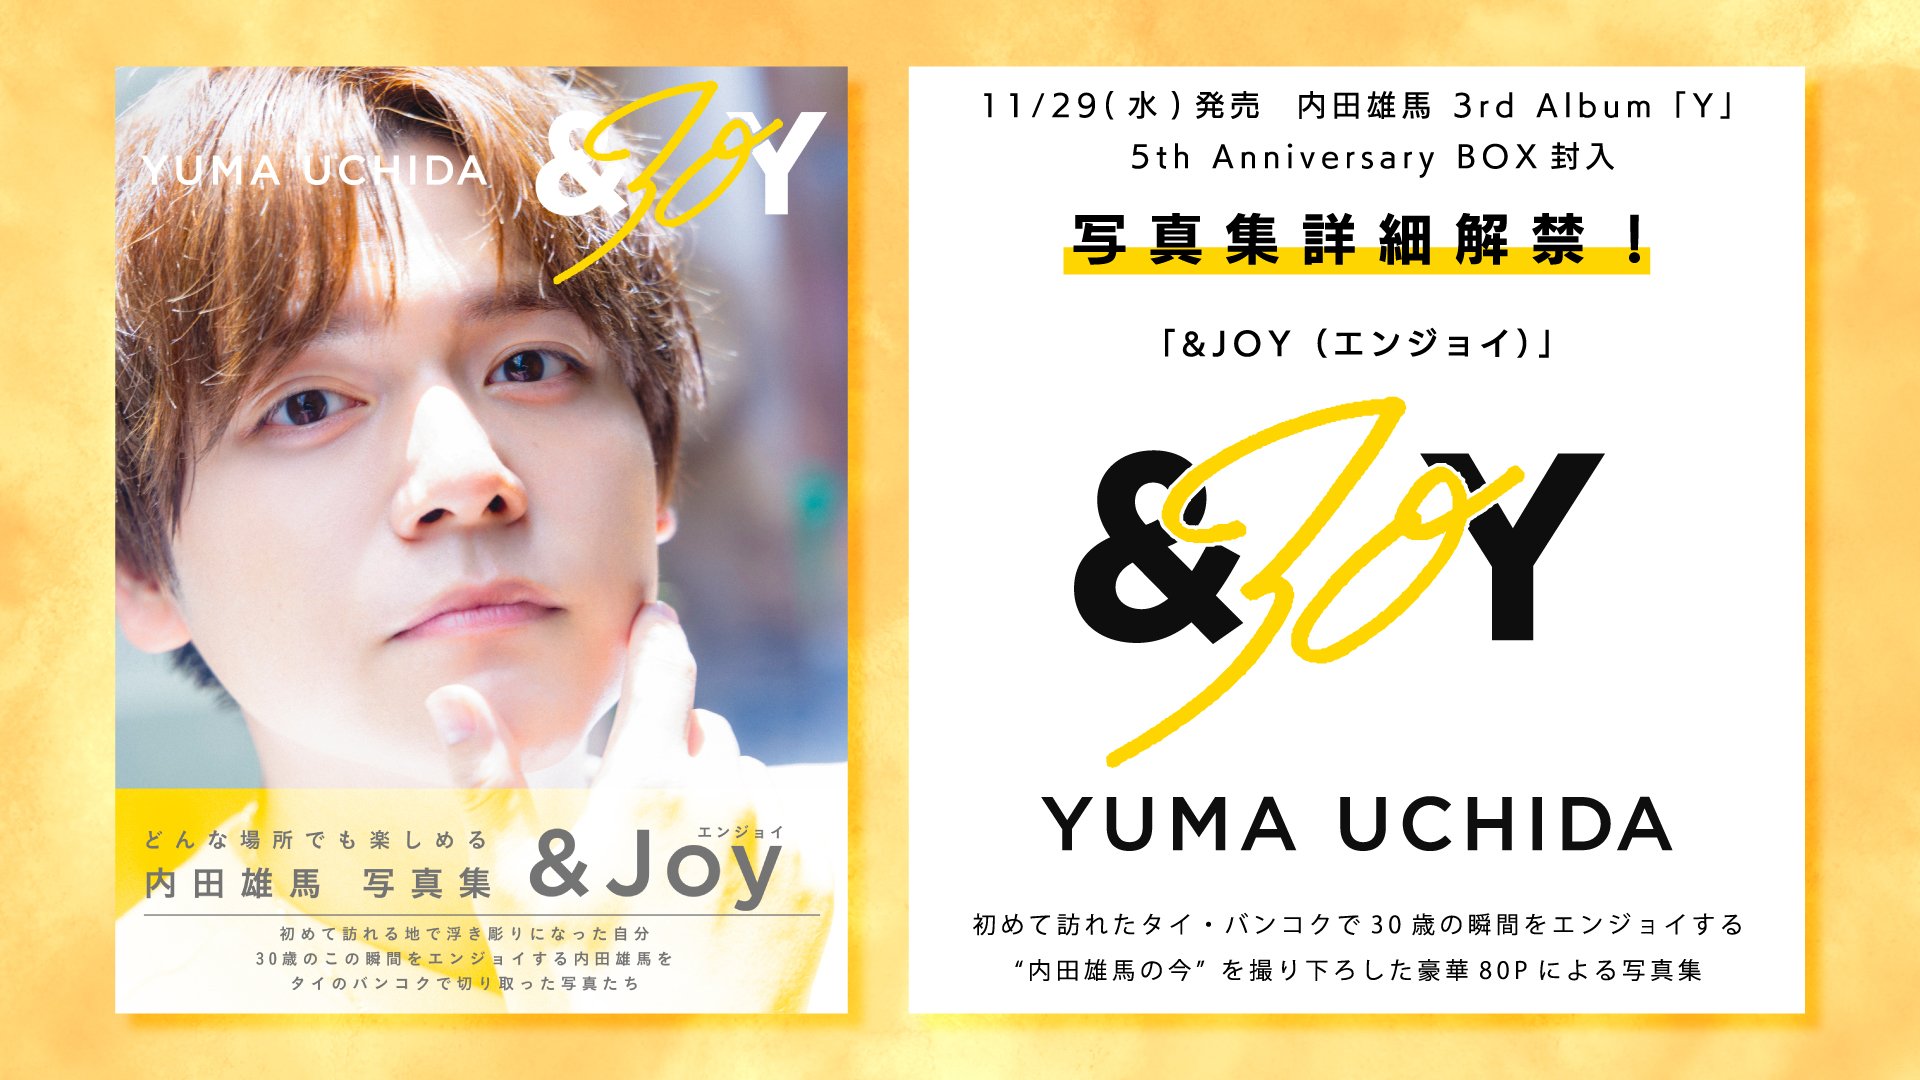 内田雄馬 11/29発売 3rd Album「Y」 5th Anniversary BOX封入 写真集 